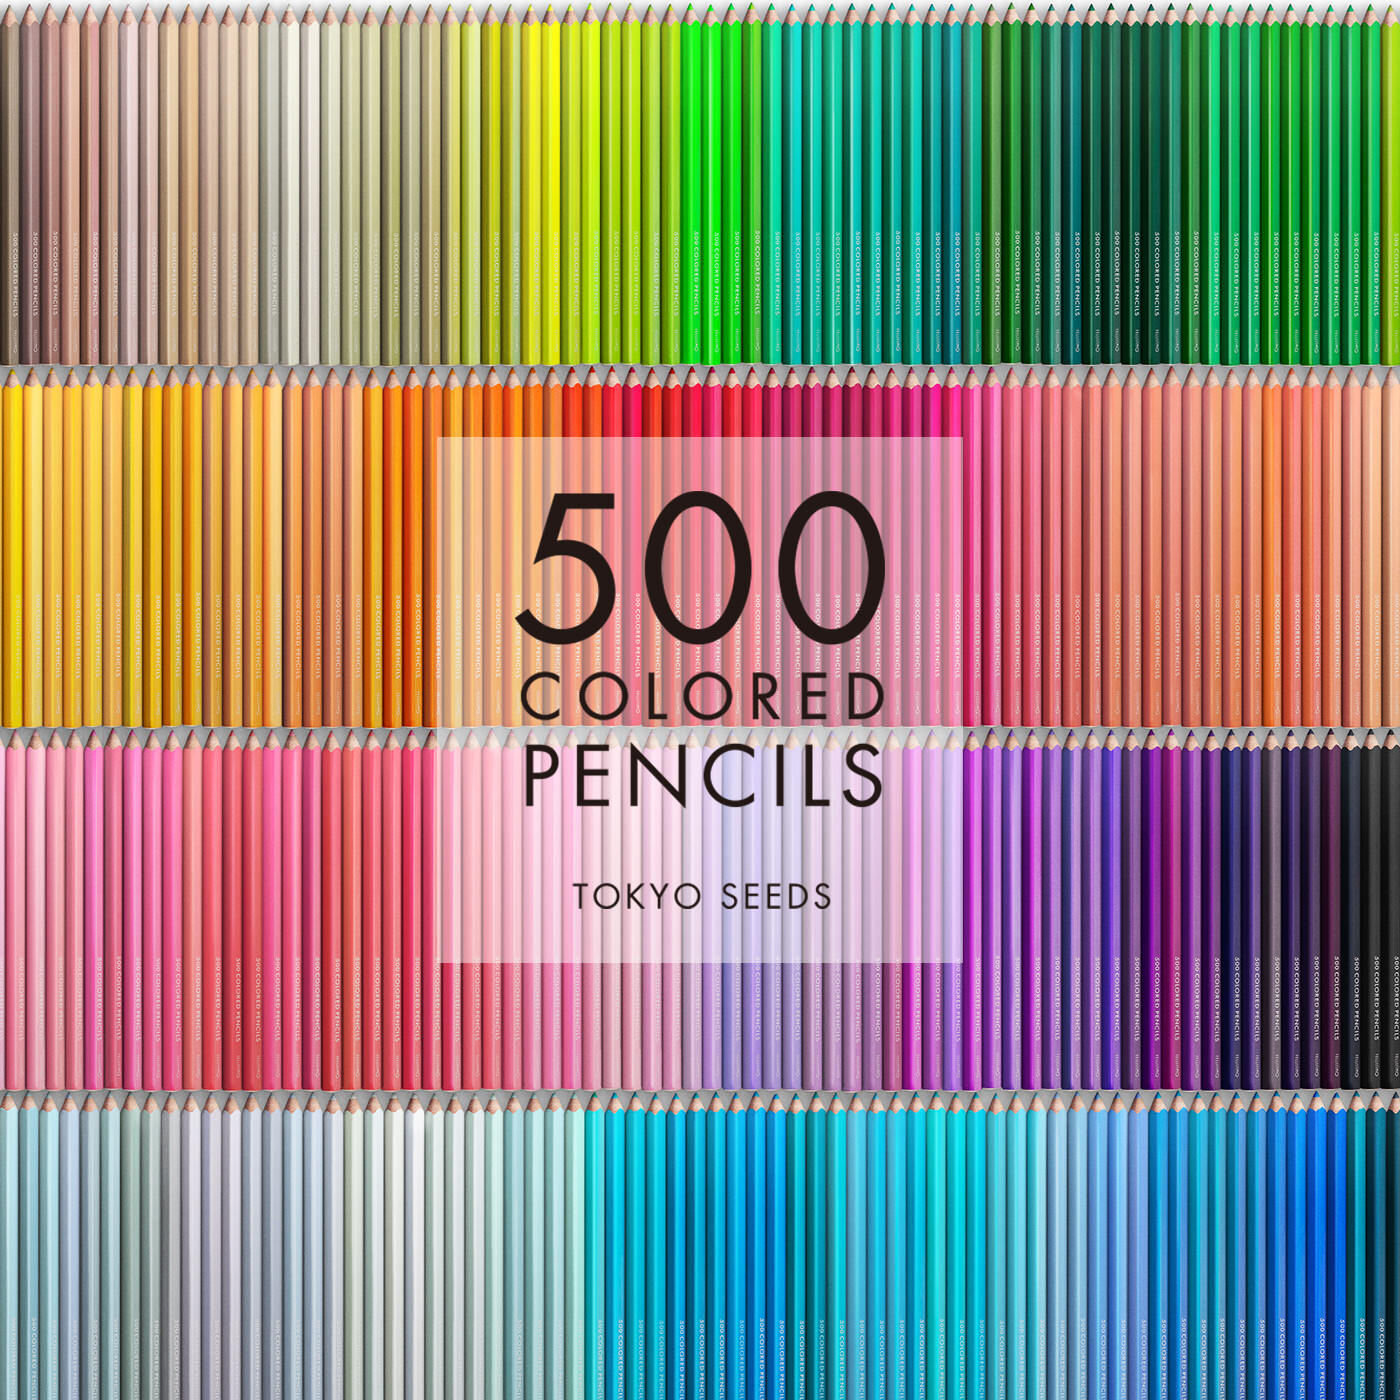 Real Stock|【49/500 HIGH SPIRITS】500色の色えんぴつ TOKYO SEEDS|1992年、世界初の「500色」という膨大な色数の色えんぴつが誕生して以来、その販売数は発売当初から合わせると、世界55ヵ国10万セット以上。今回、メイド・イン・ジャパンにこだわり、すべてが新しく生まれ変わって登場しました。